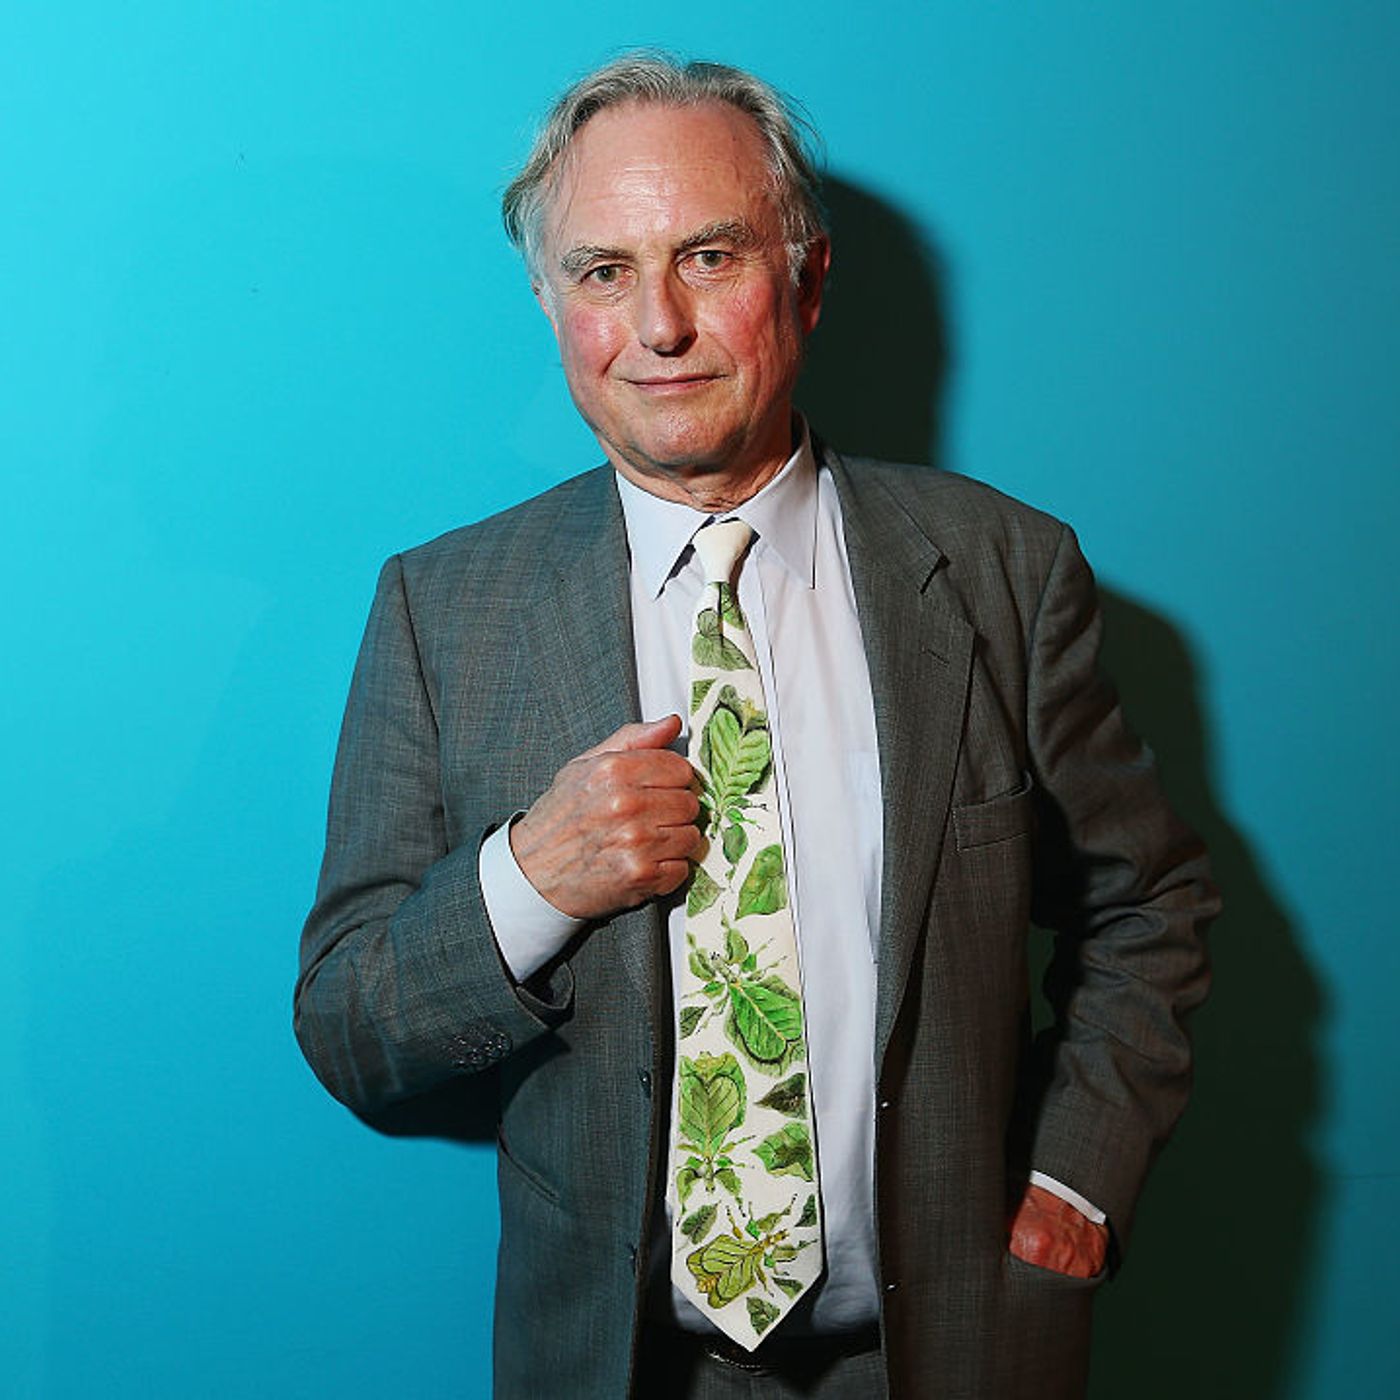 Richard Dawkins: Books Do Furnish A Life